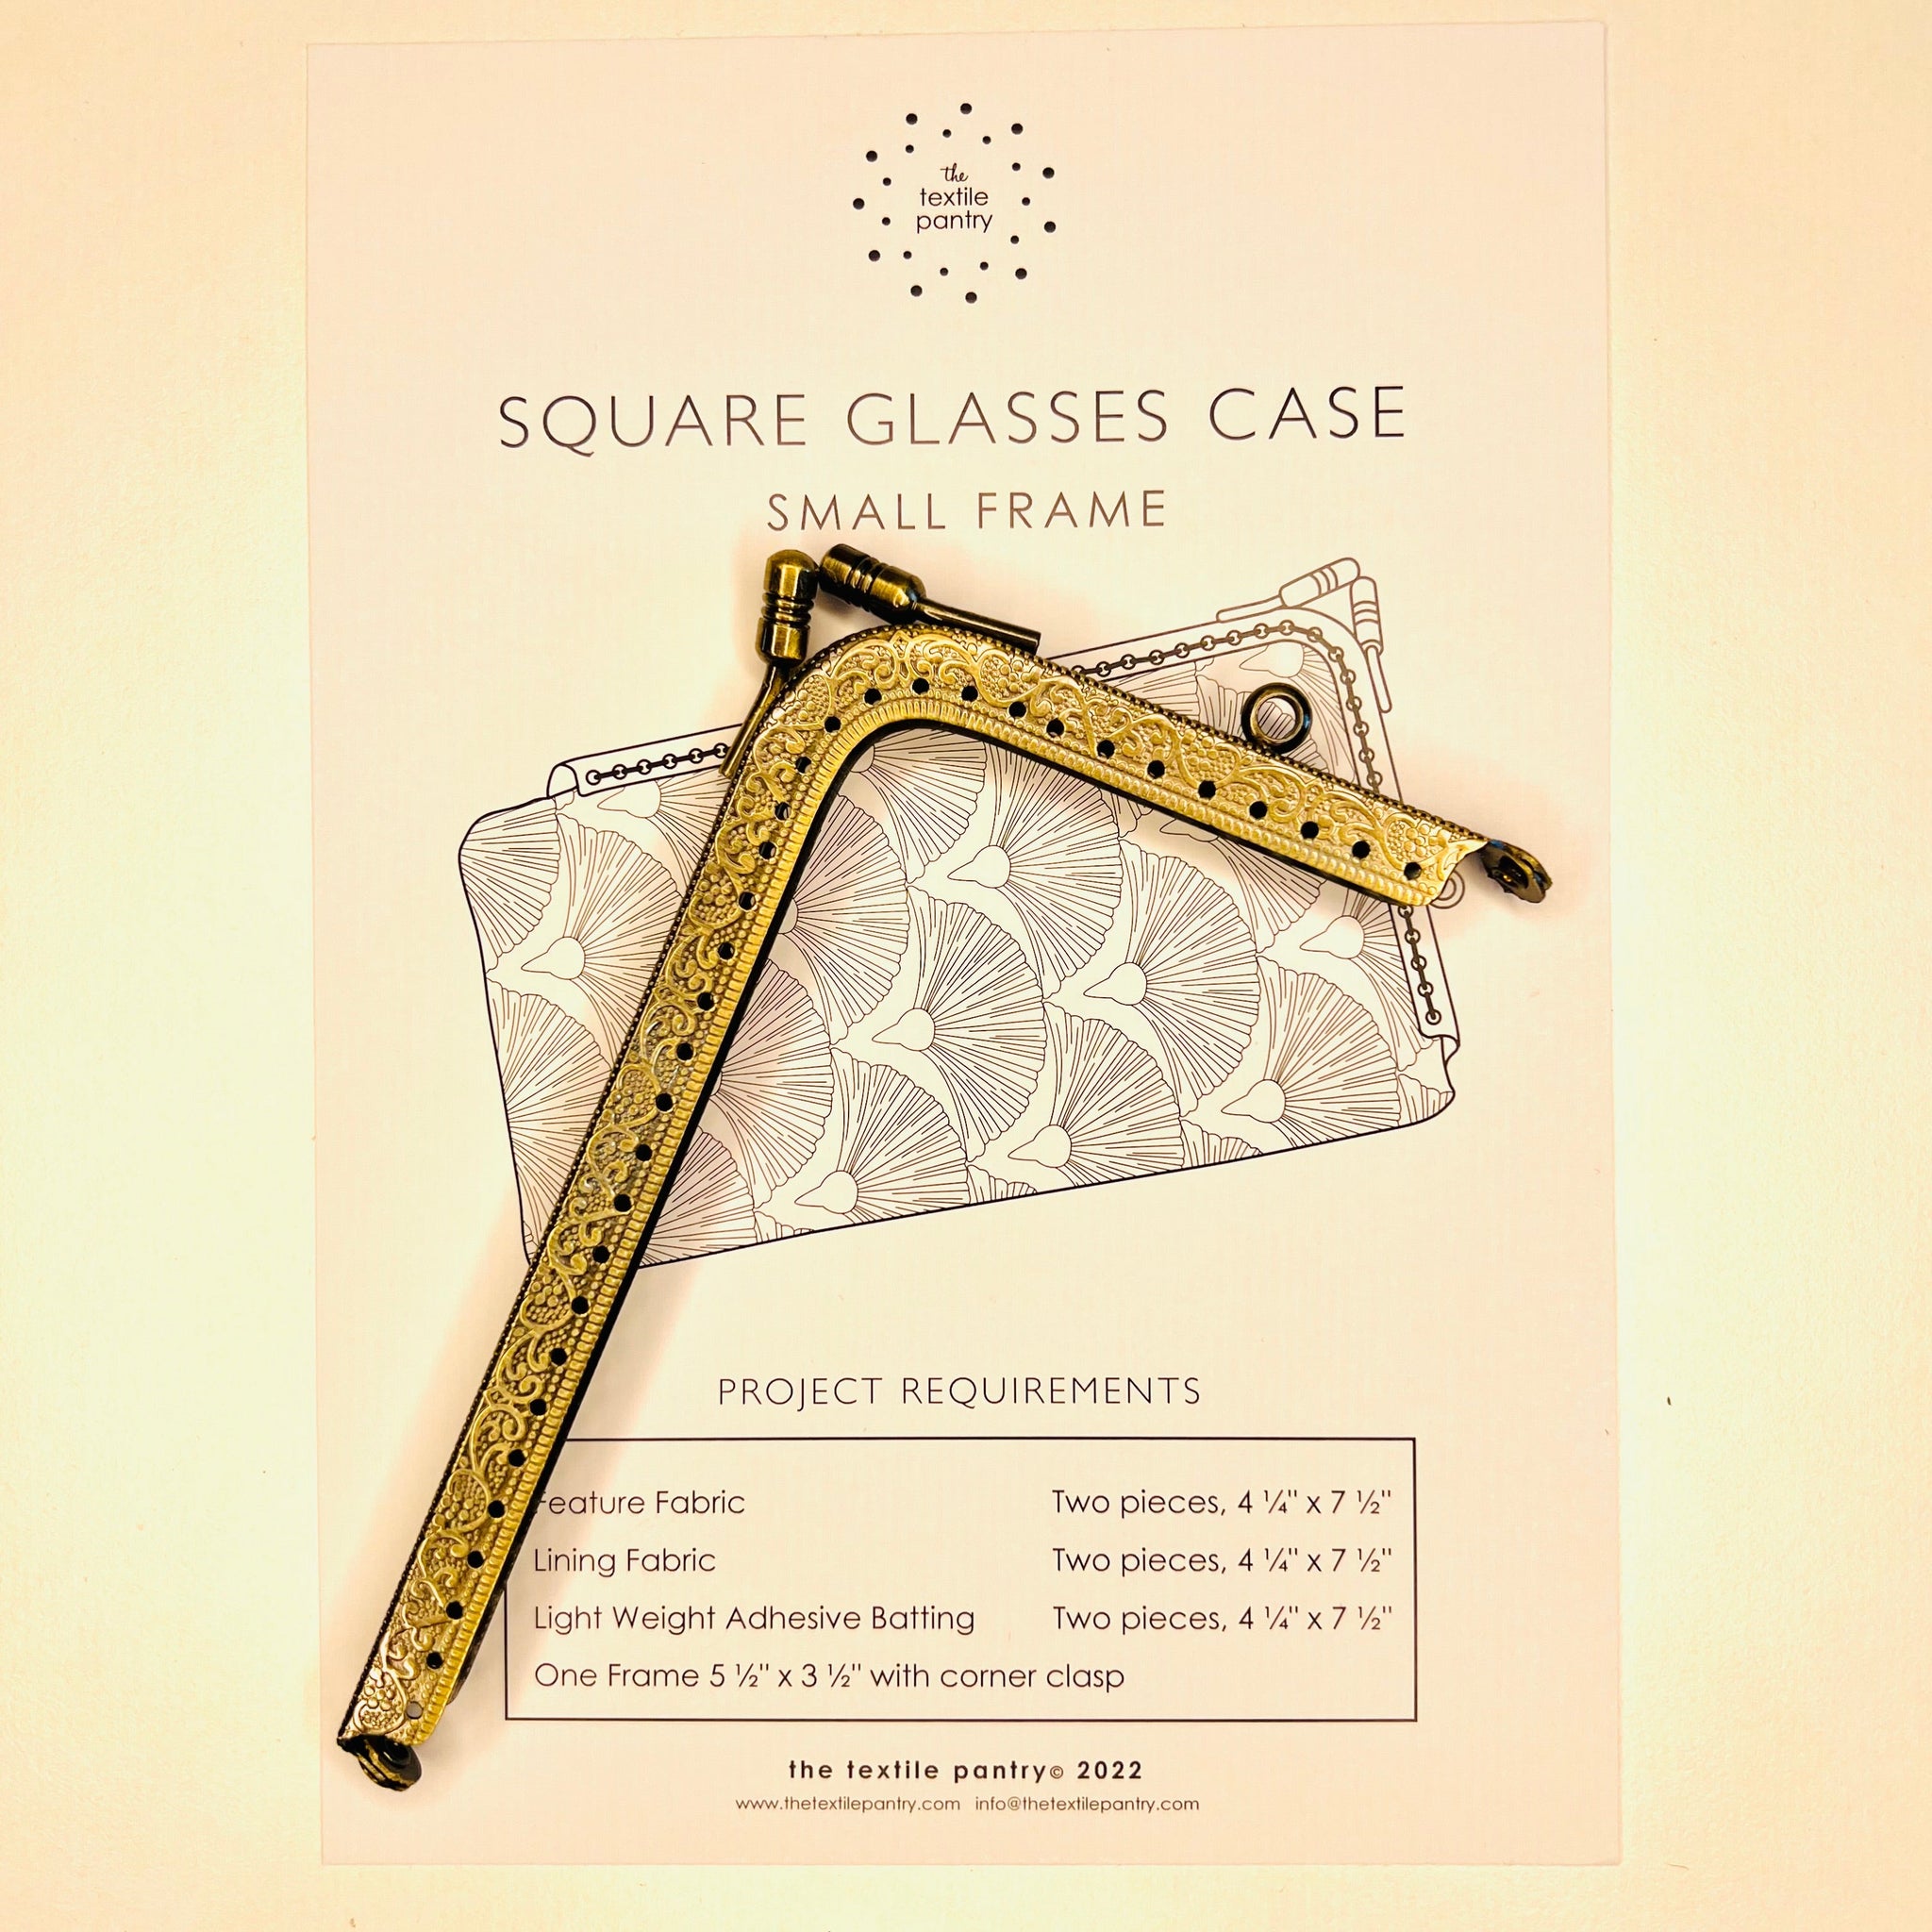 Square Glasses Case - Small